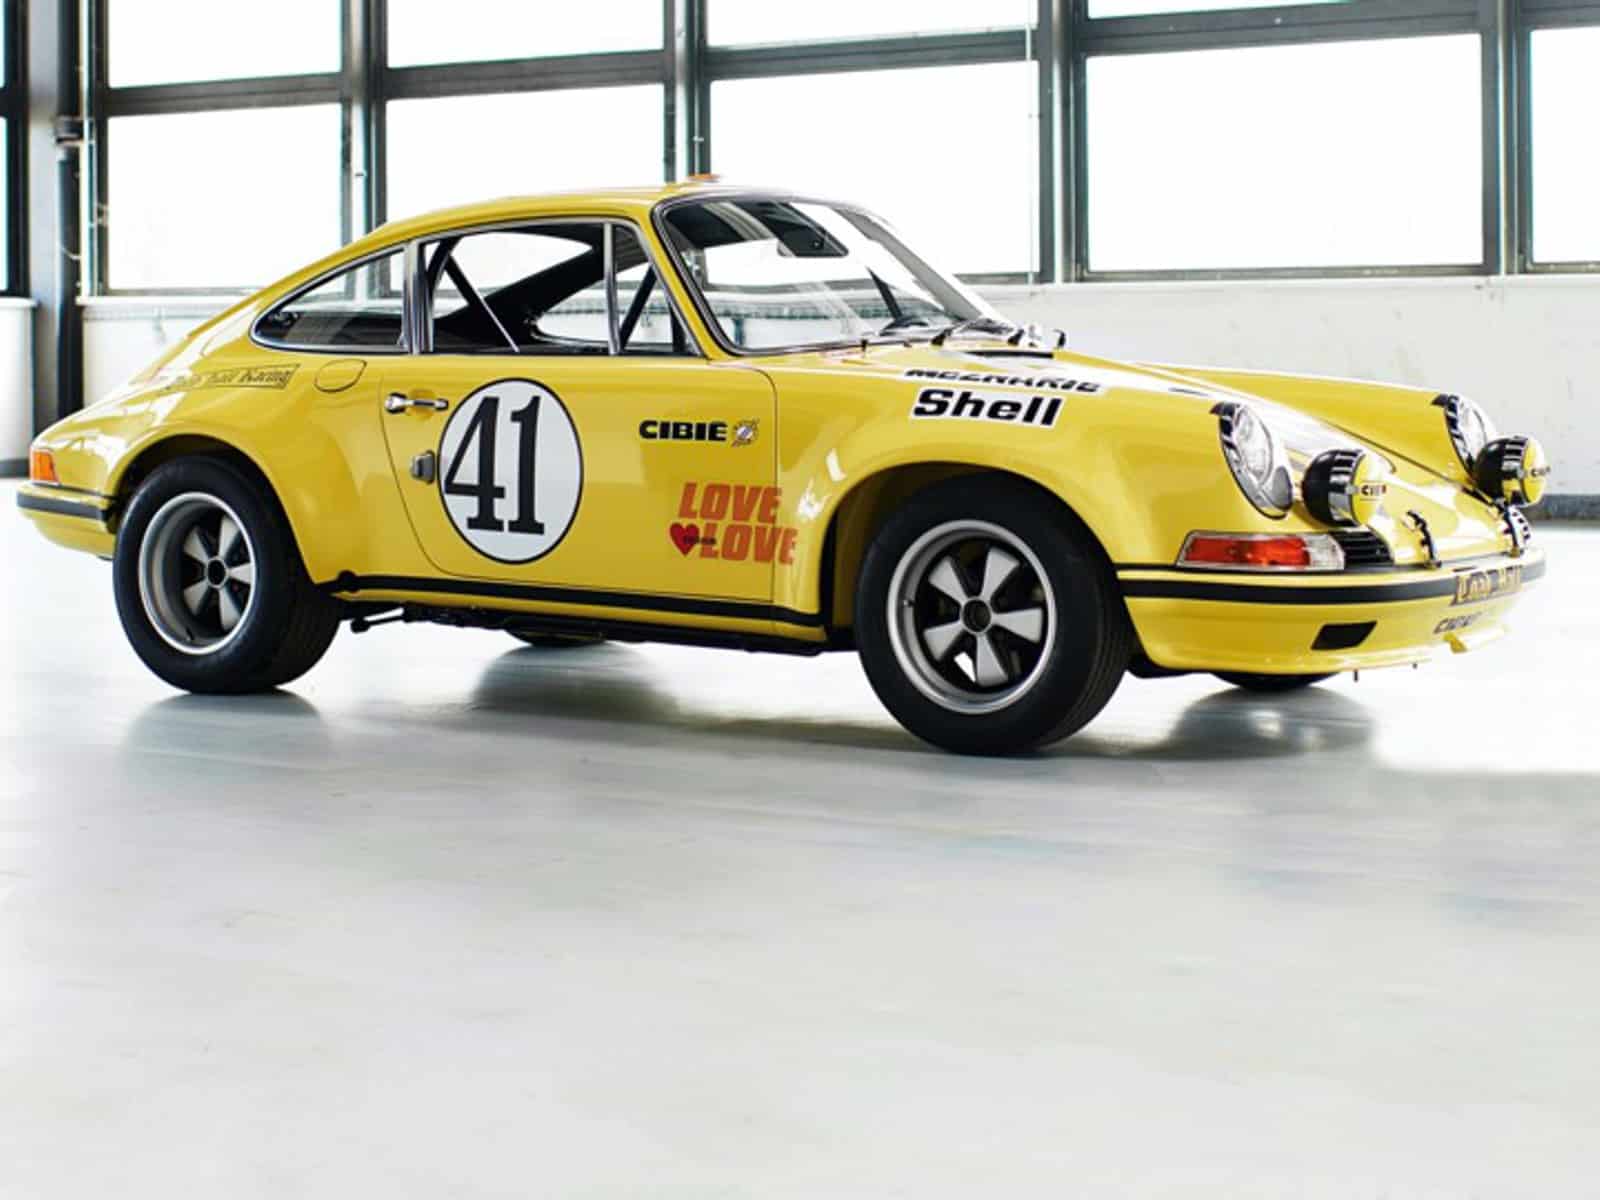 Restaurierter Porsche 911 S/T von 1970 (Foto Porsche)